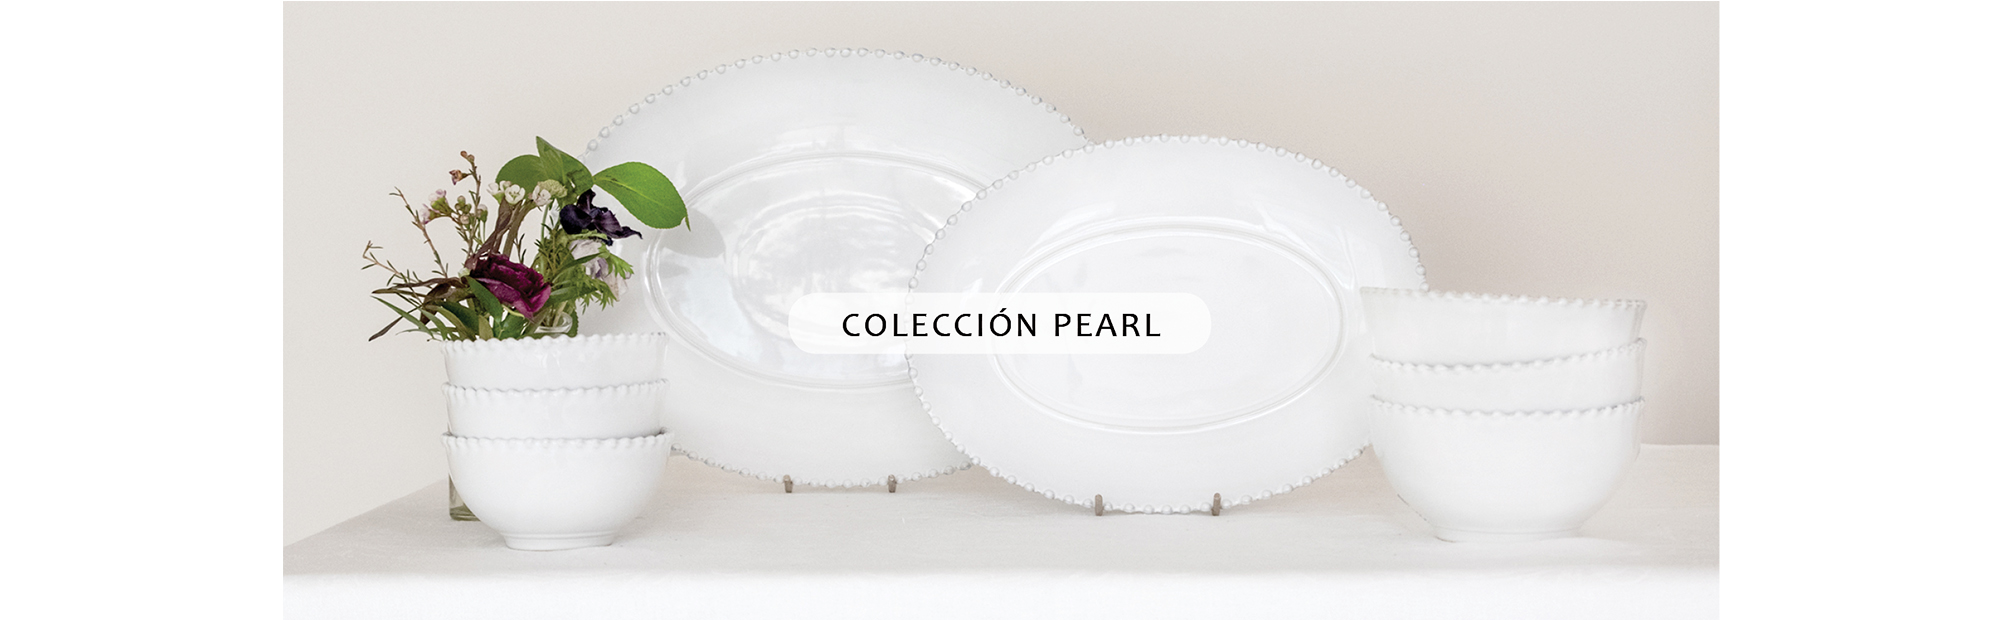 Colección Pearl.jpg